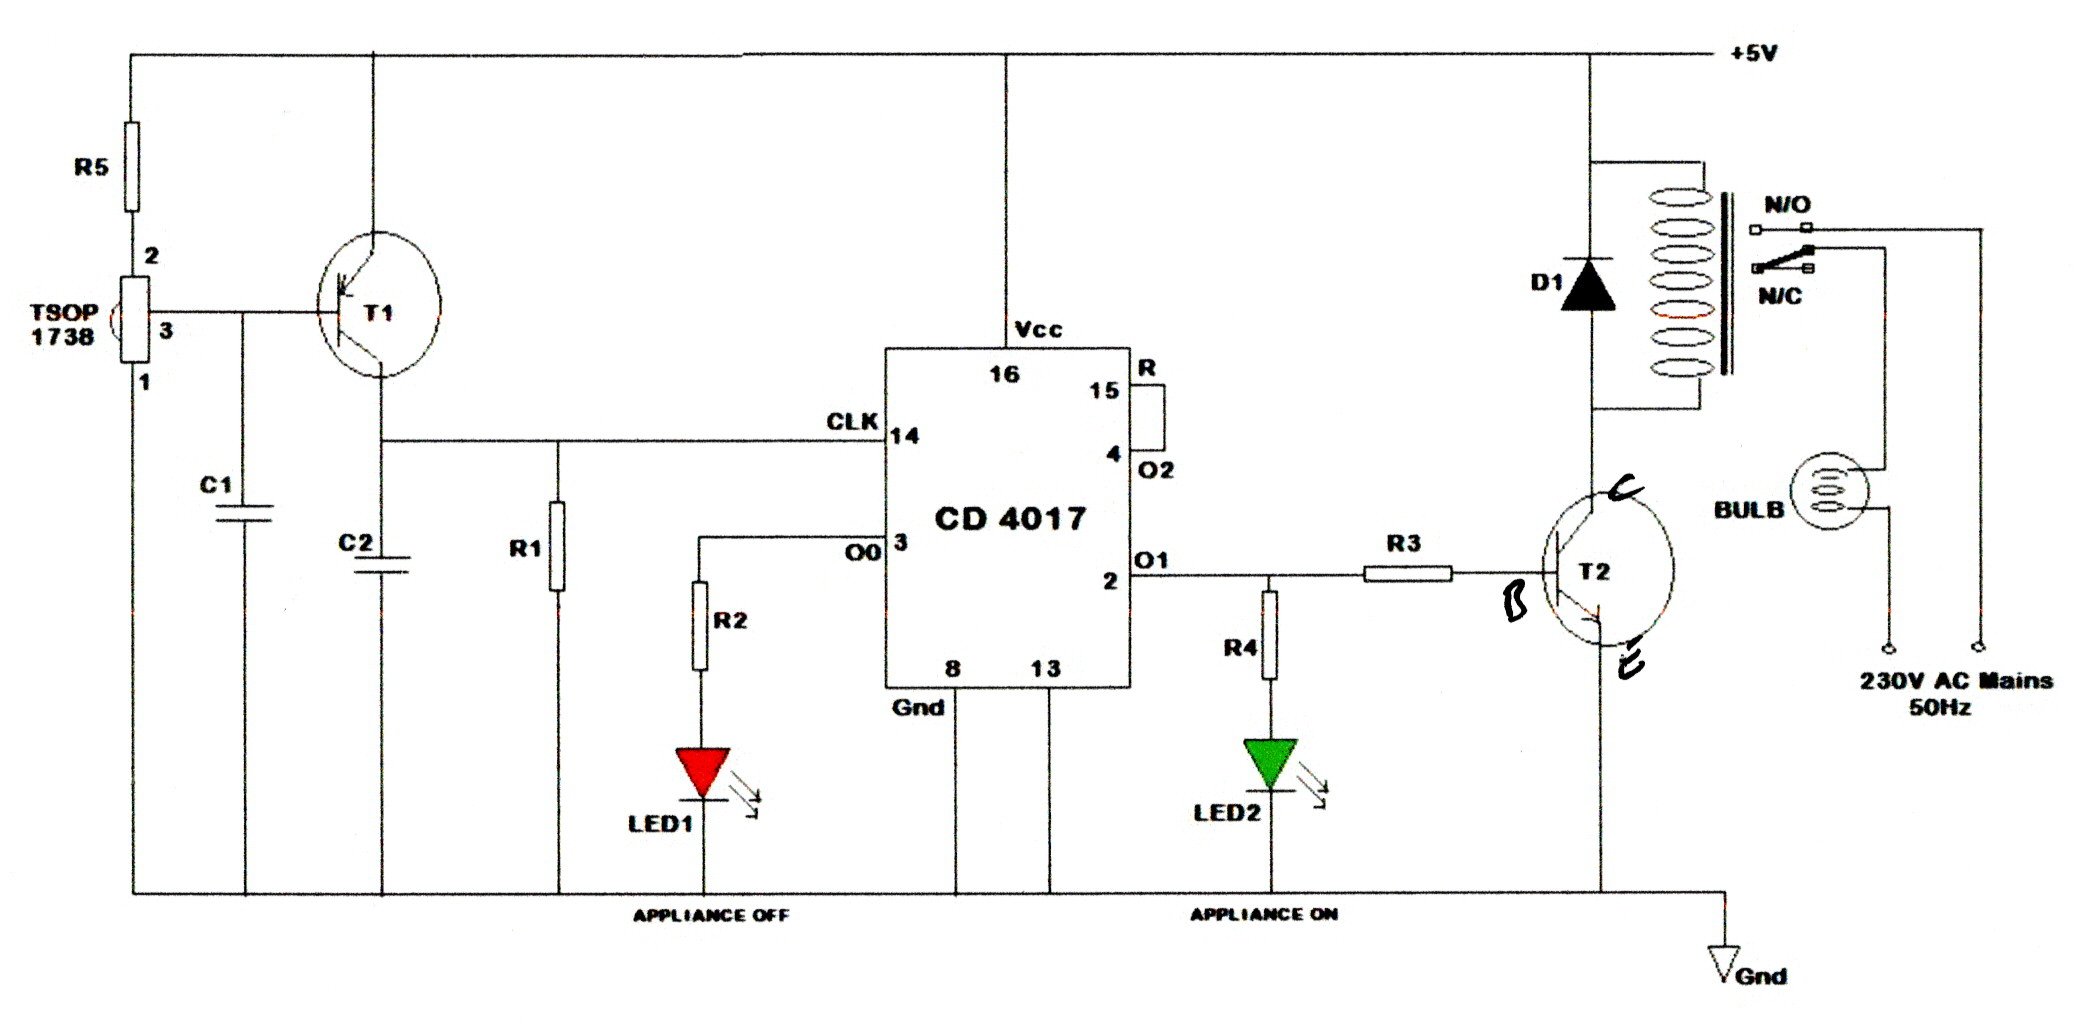 Circuit Diagram.jpg